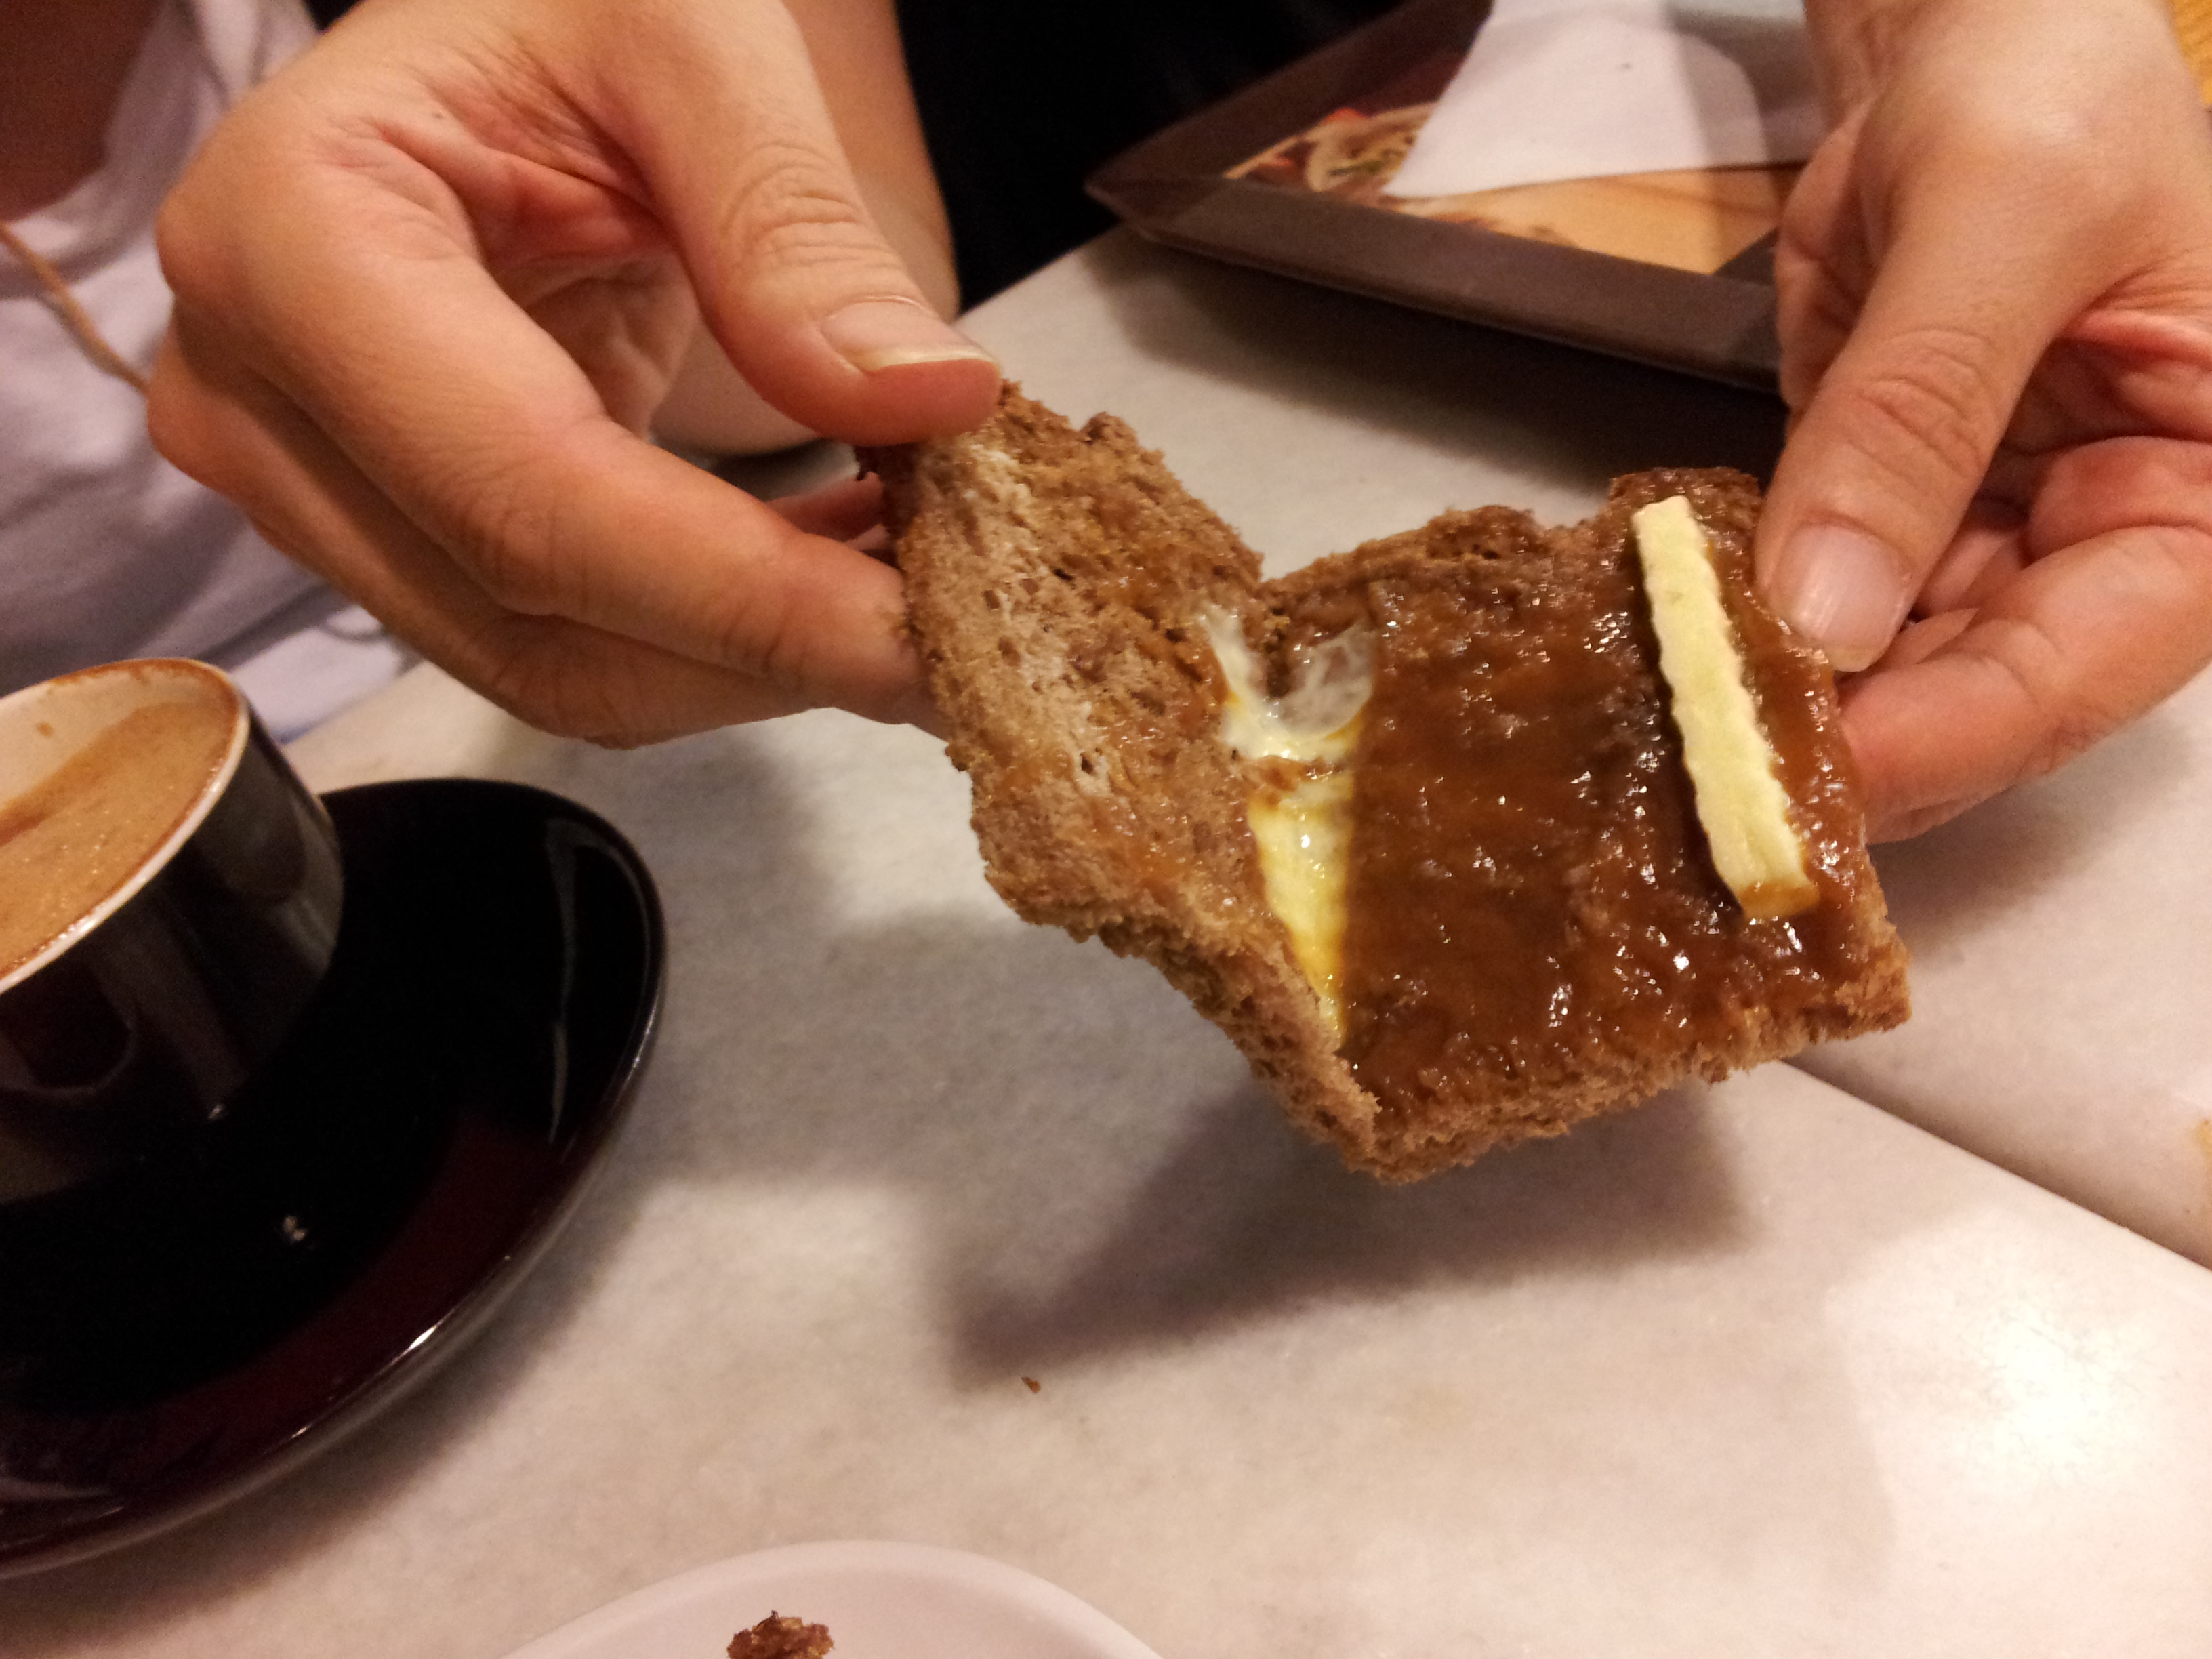 KAYA Butter
toast